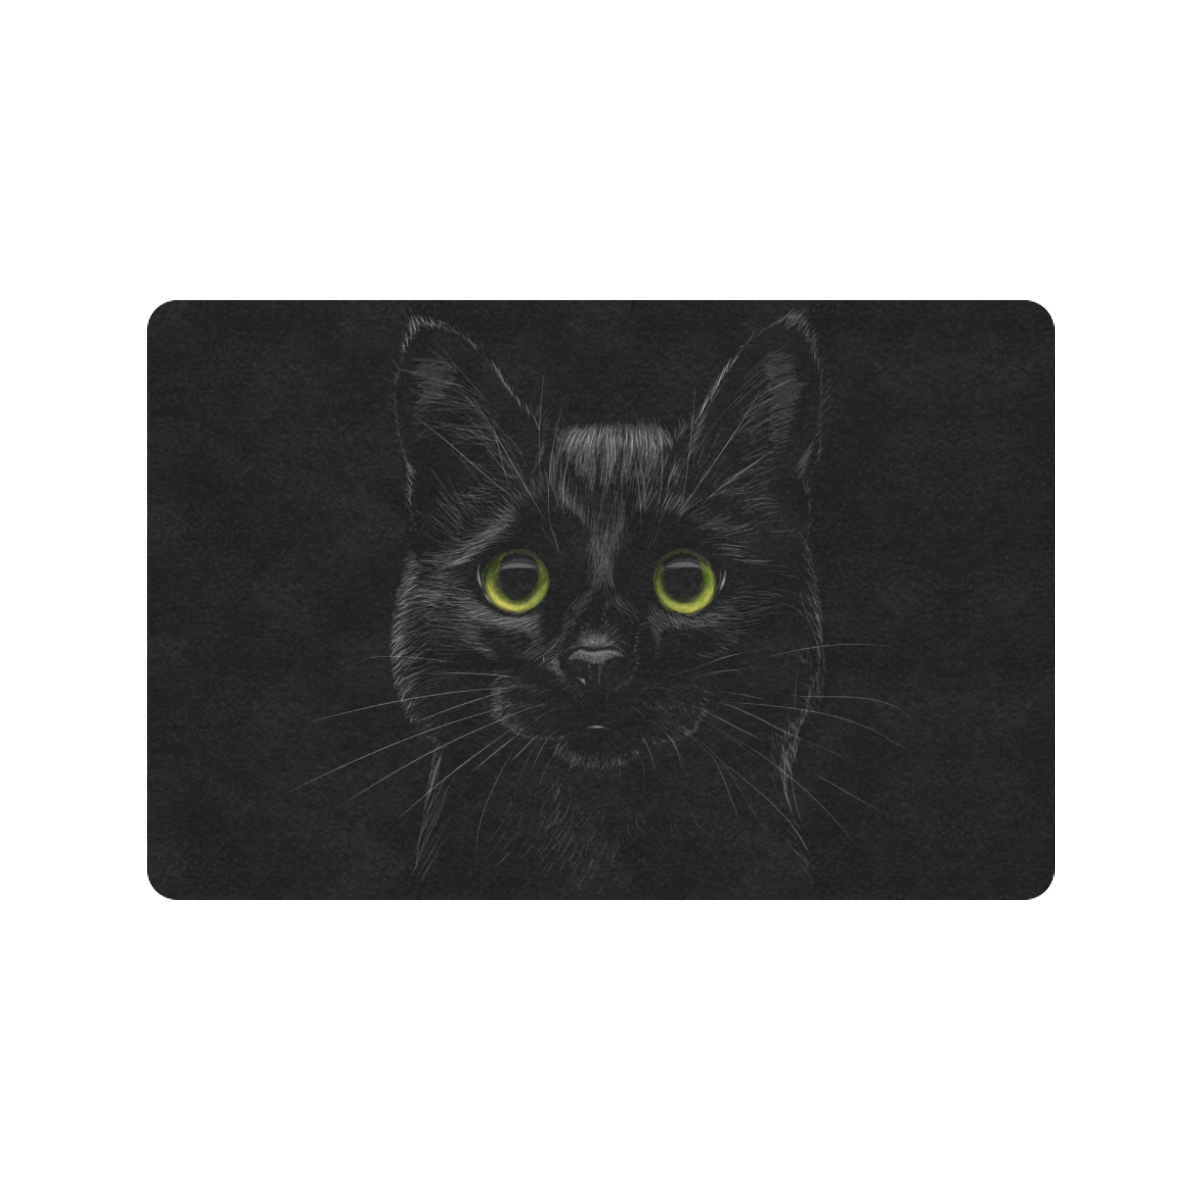 Black Cat Doormat 24"x16" (Black Base)